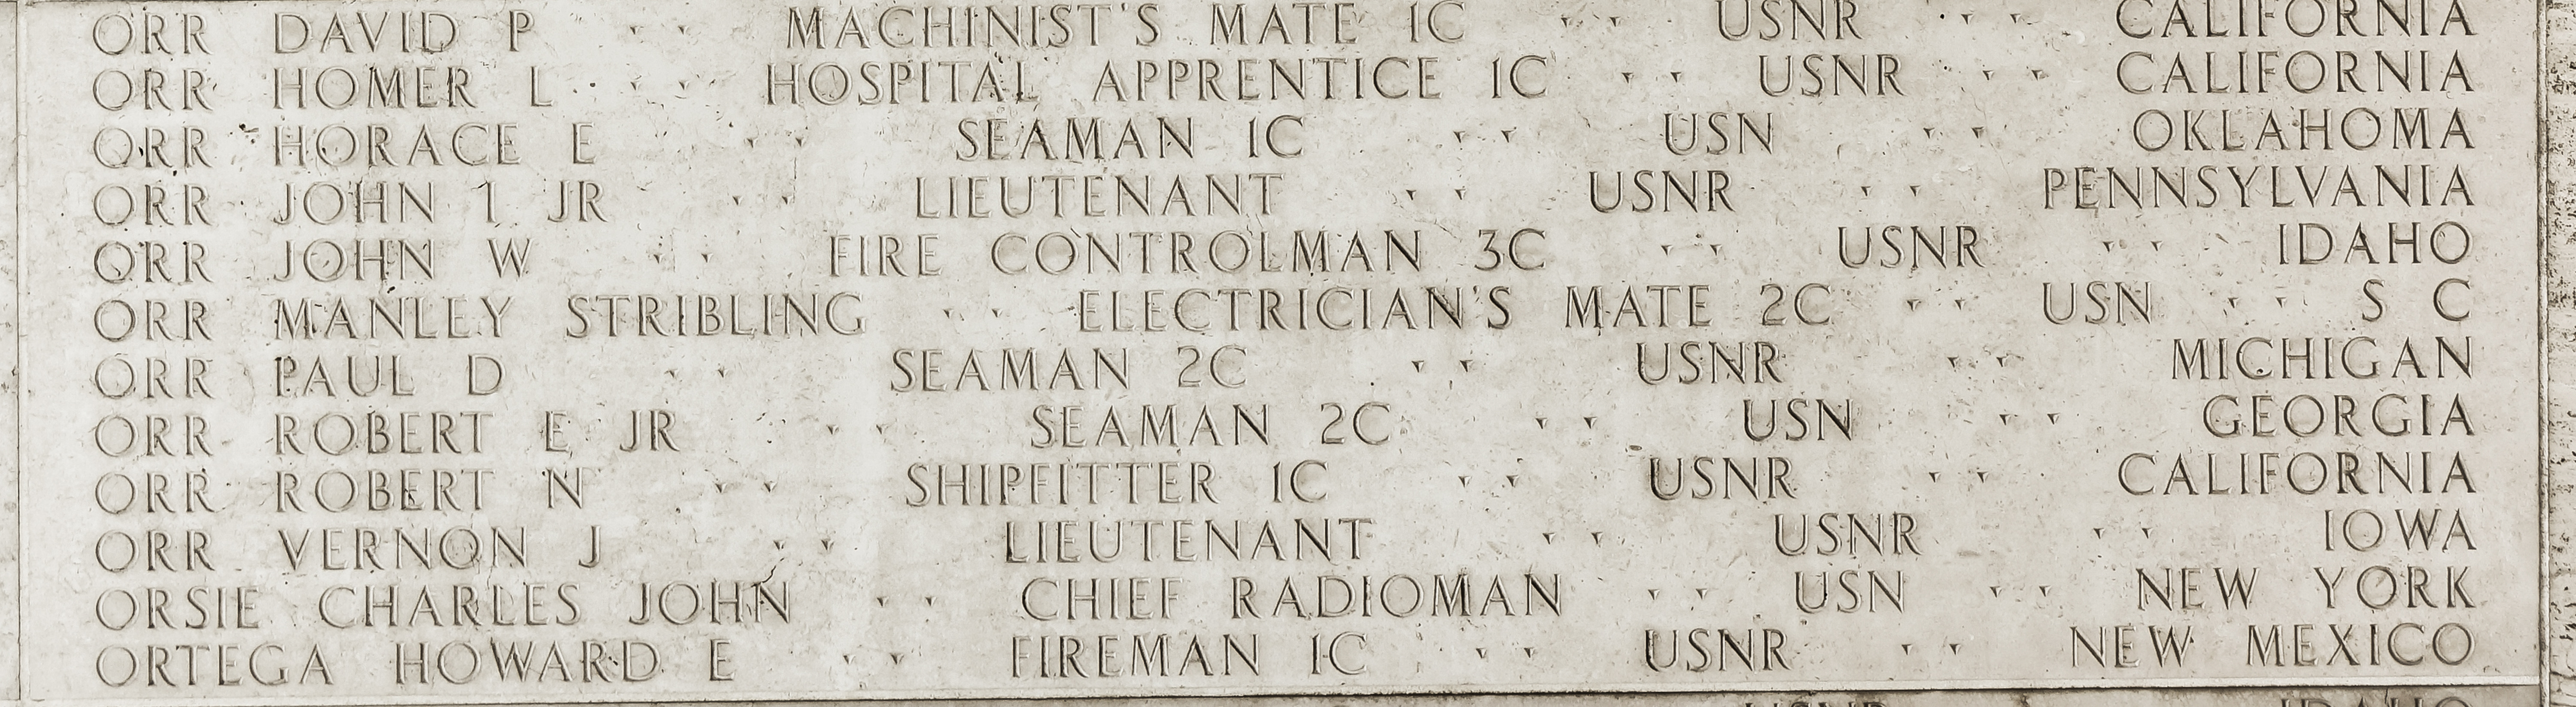 Horace E. Orr, Seaman First Class